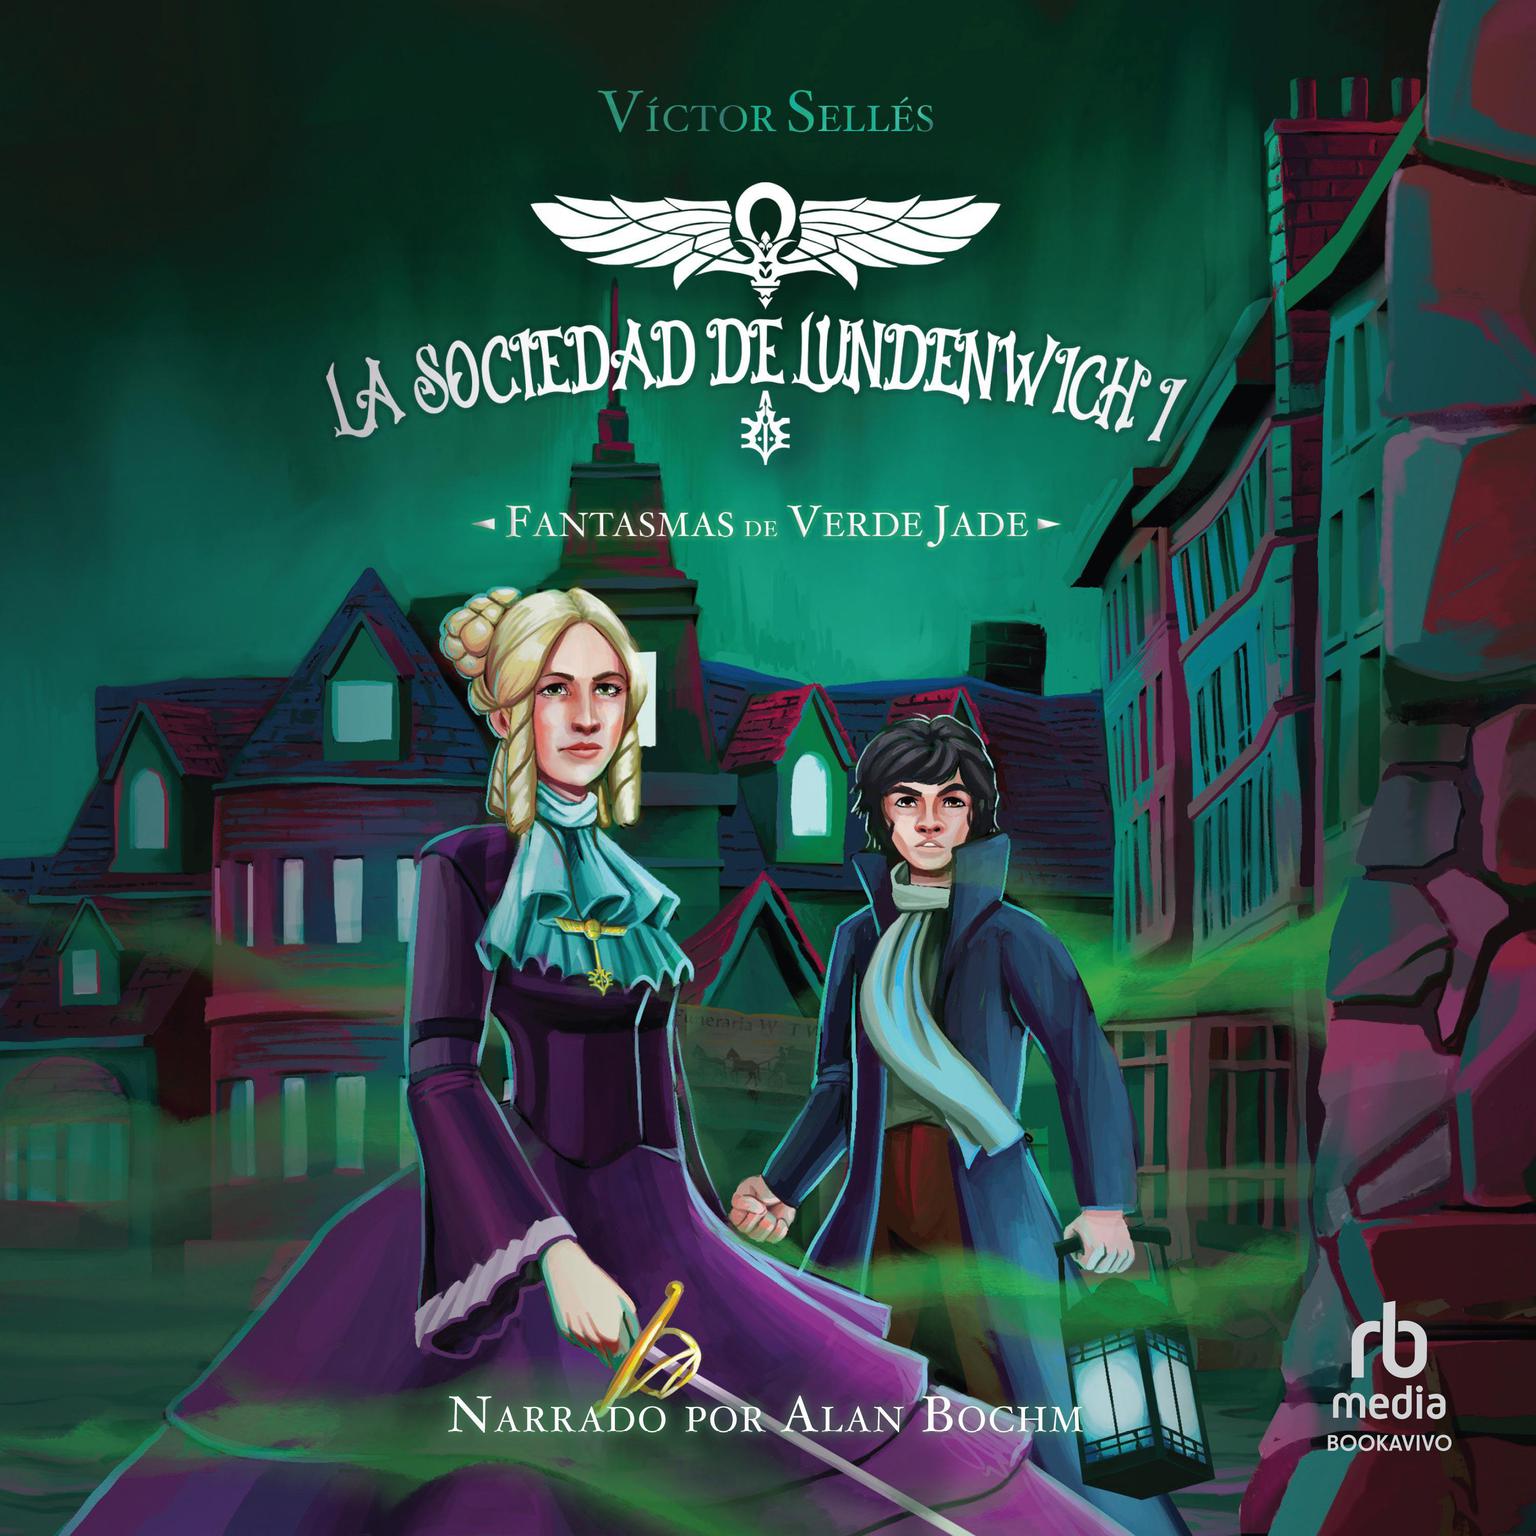 Fantasmas de verde jade Audiobook, by Victor Selles